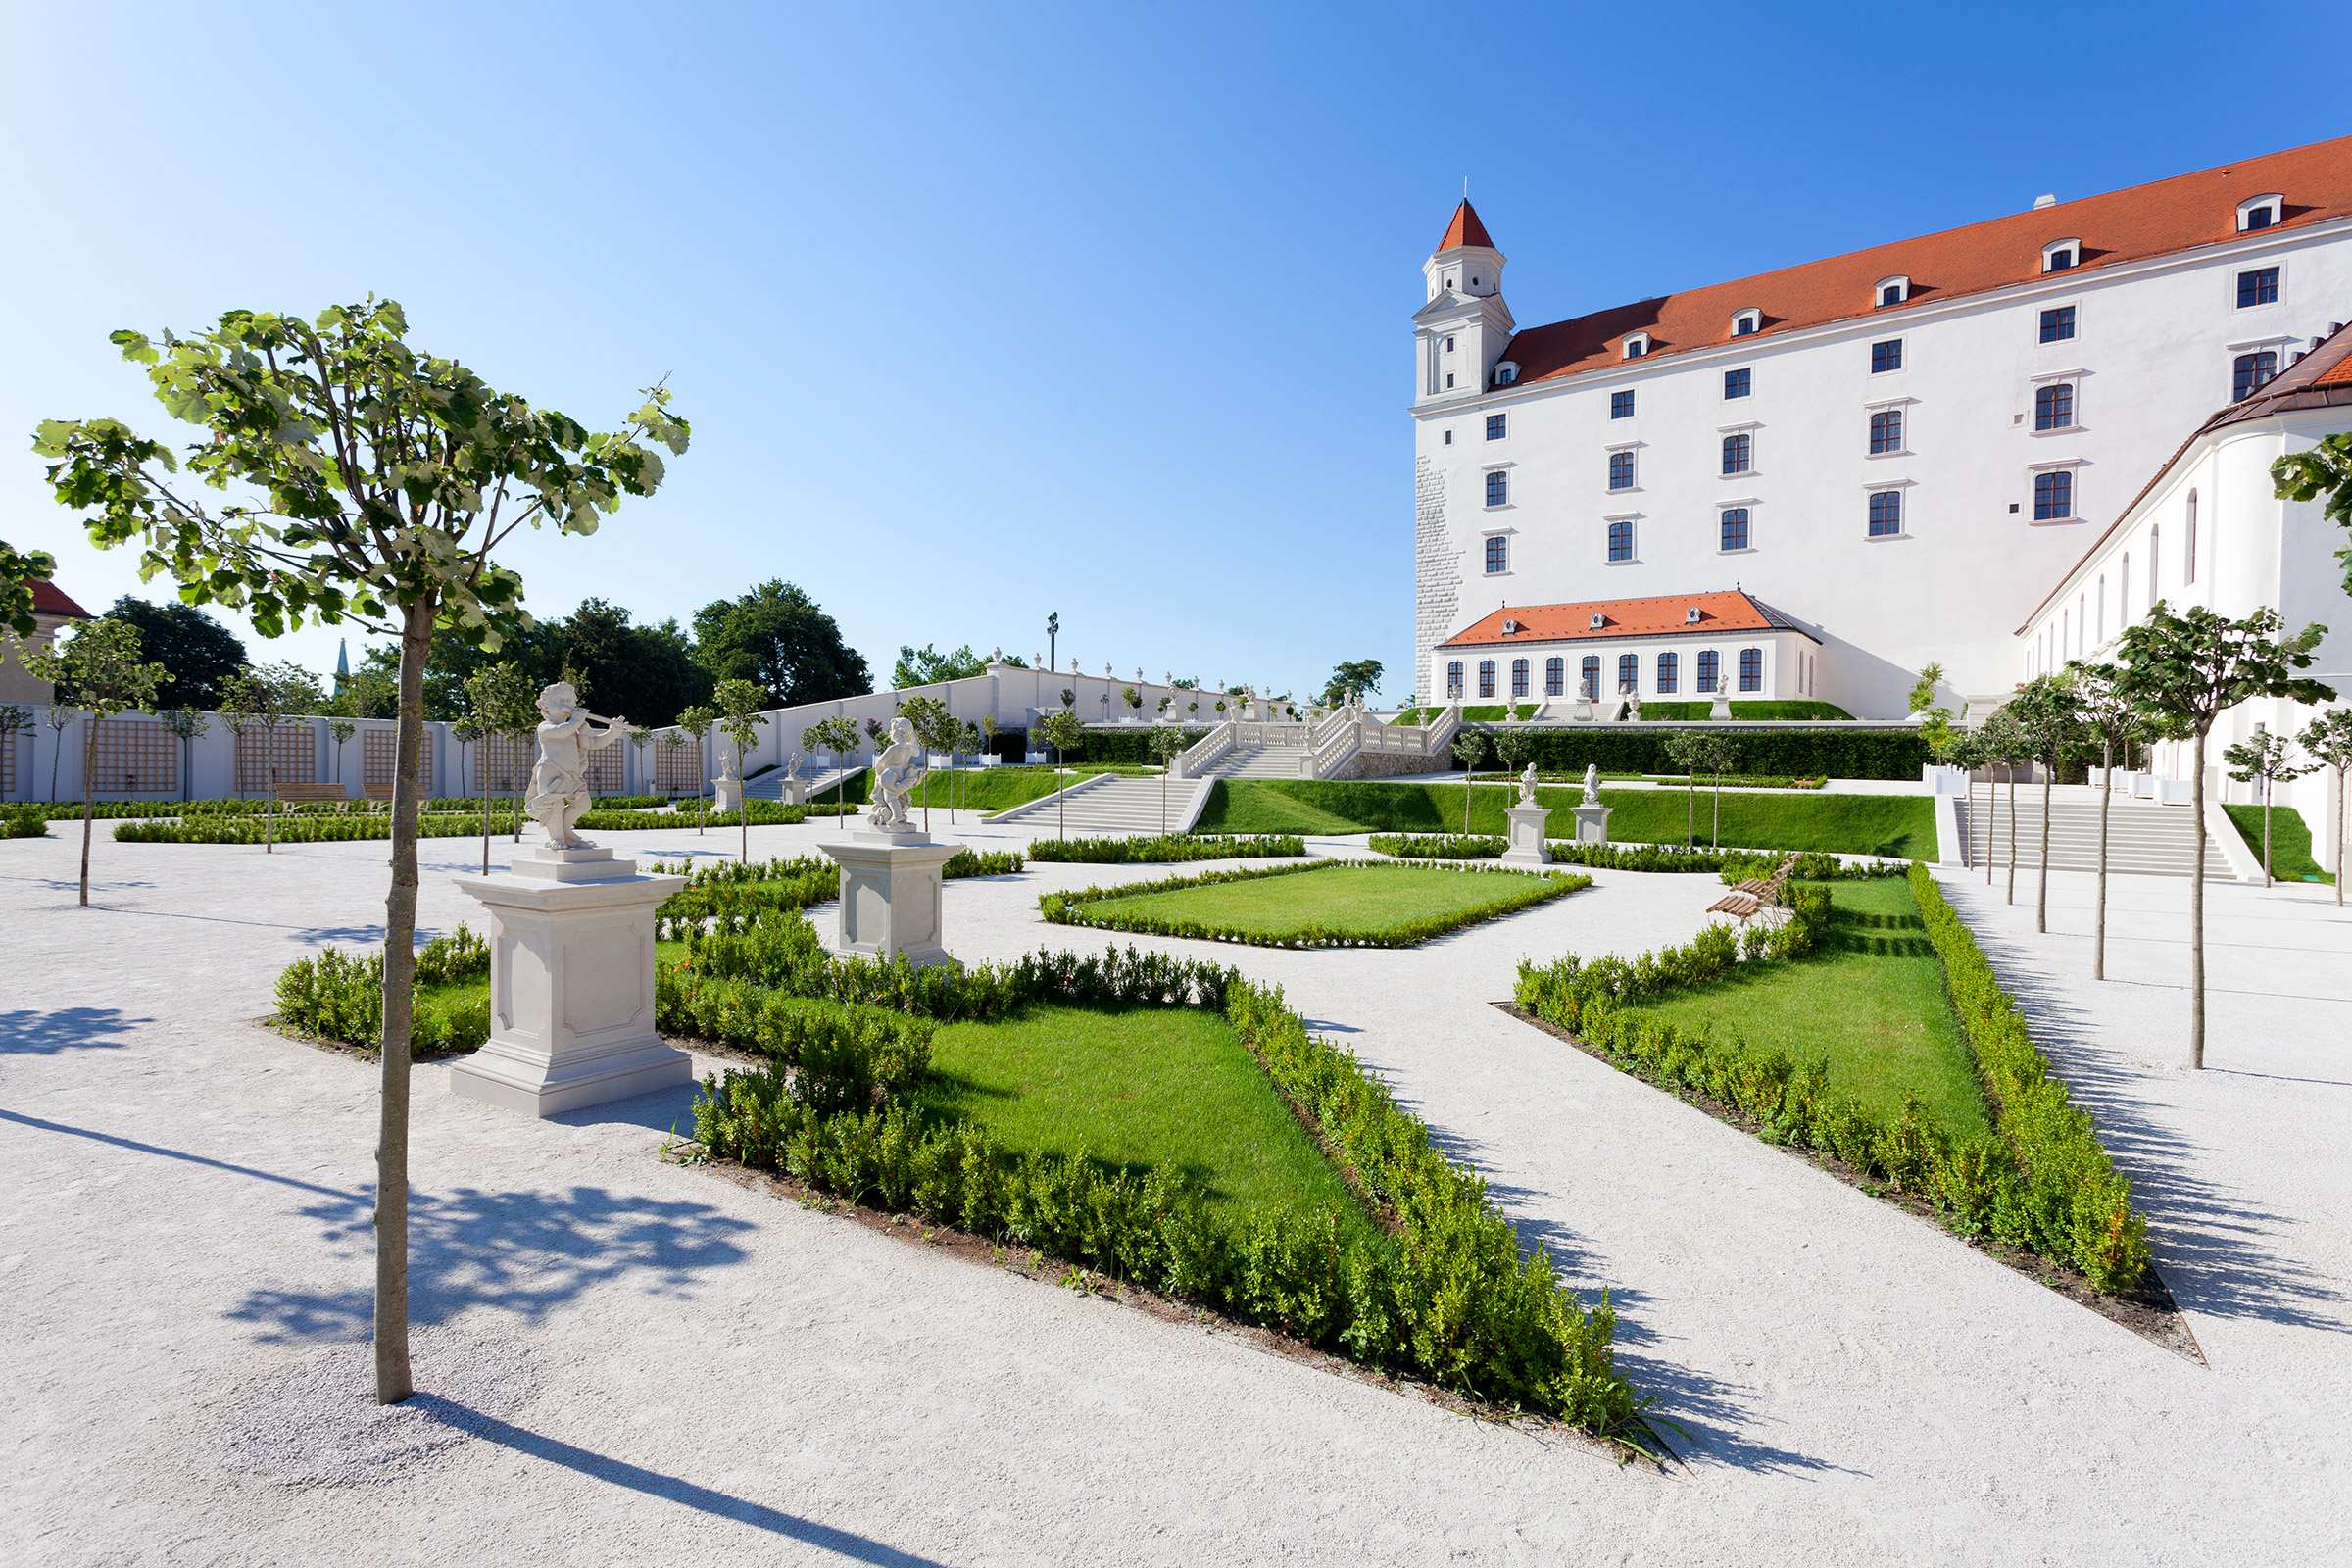 Bratislava Castle - Baroque Garden